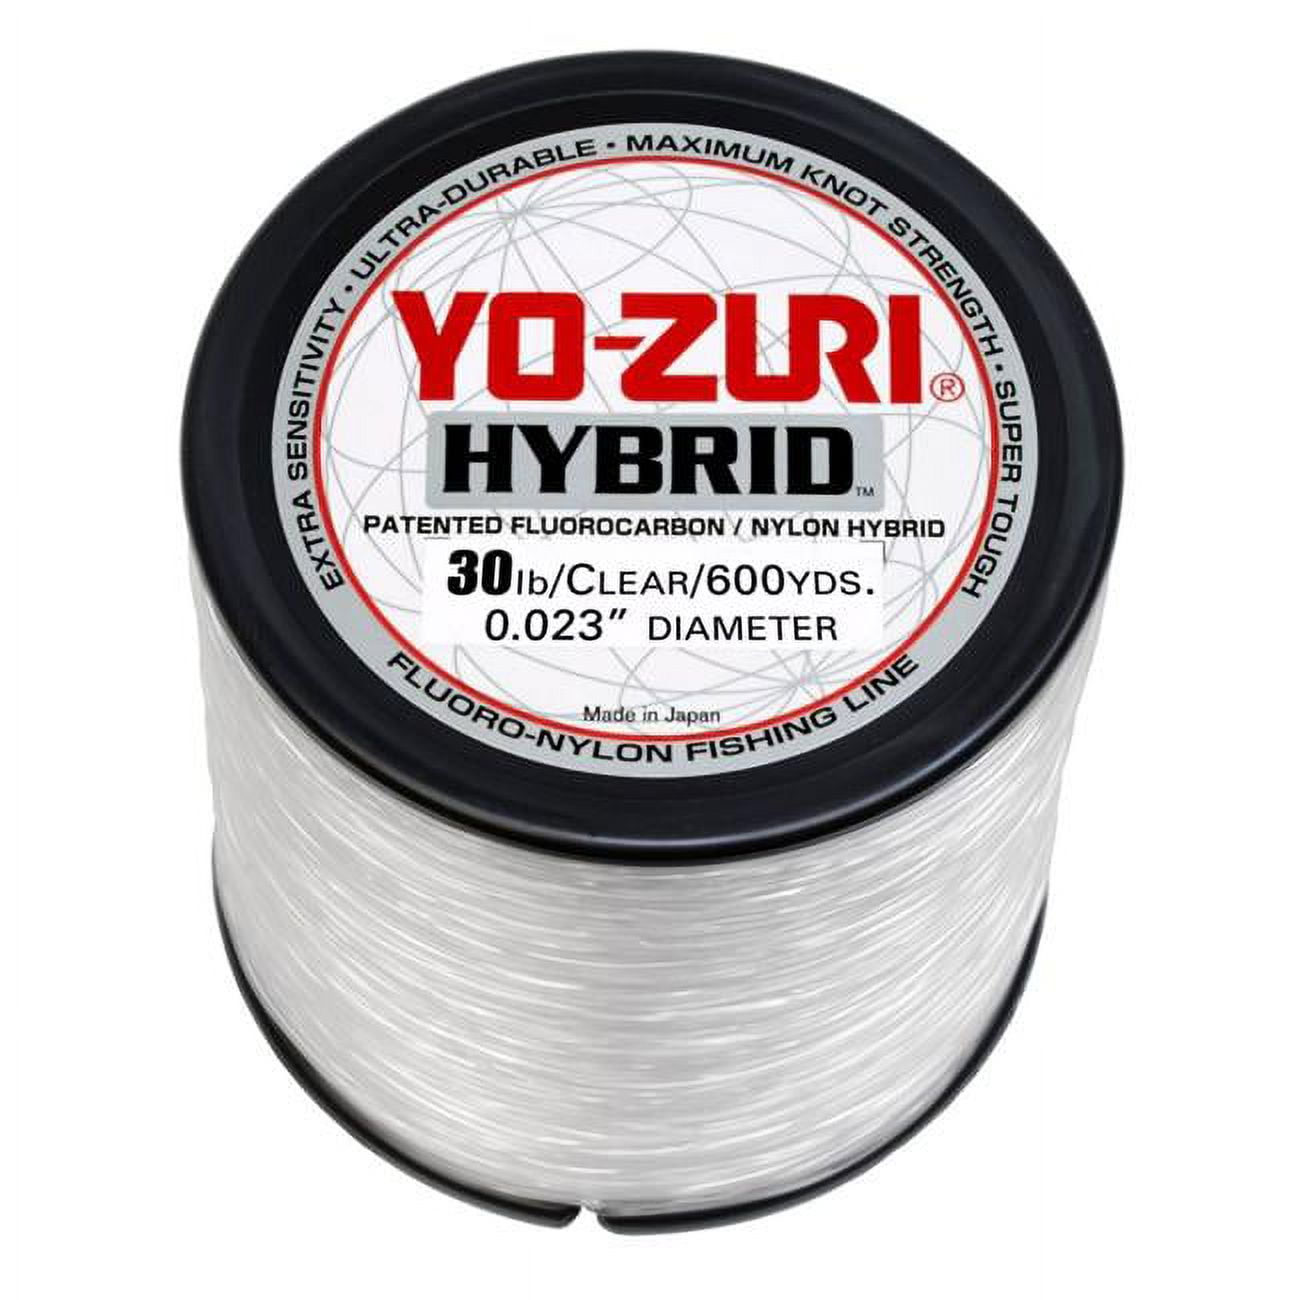 Yo-Zuri Clear Hybrid Line, 600 Yd 10lb Fishing Line 